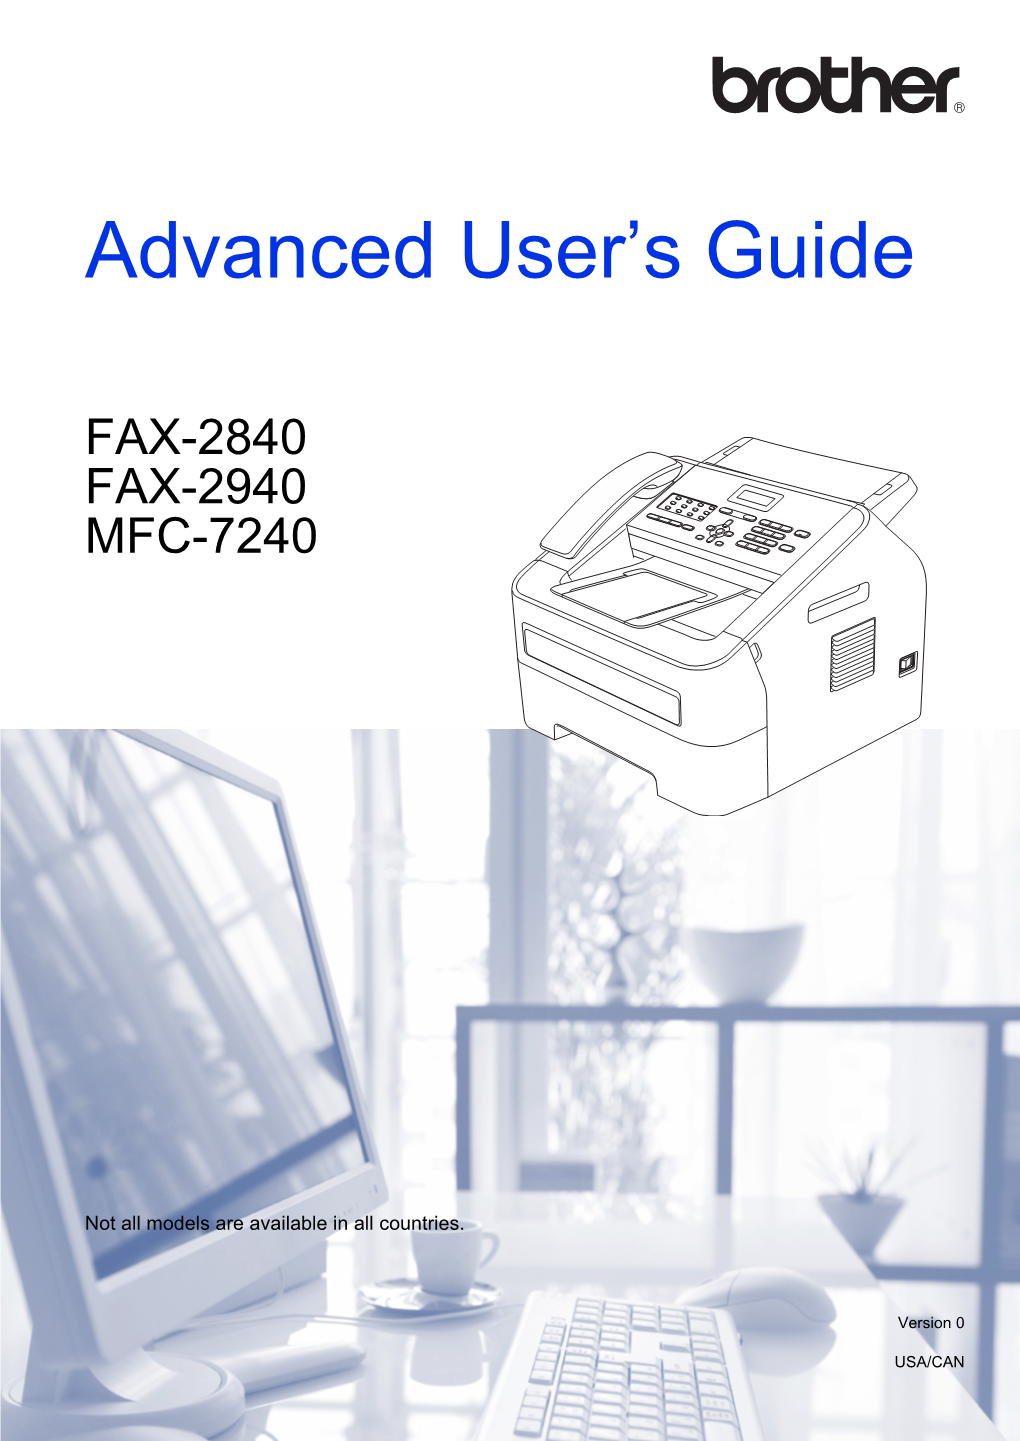 Advanced User's Guide